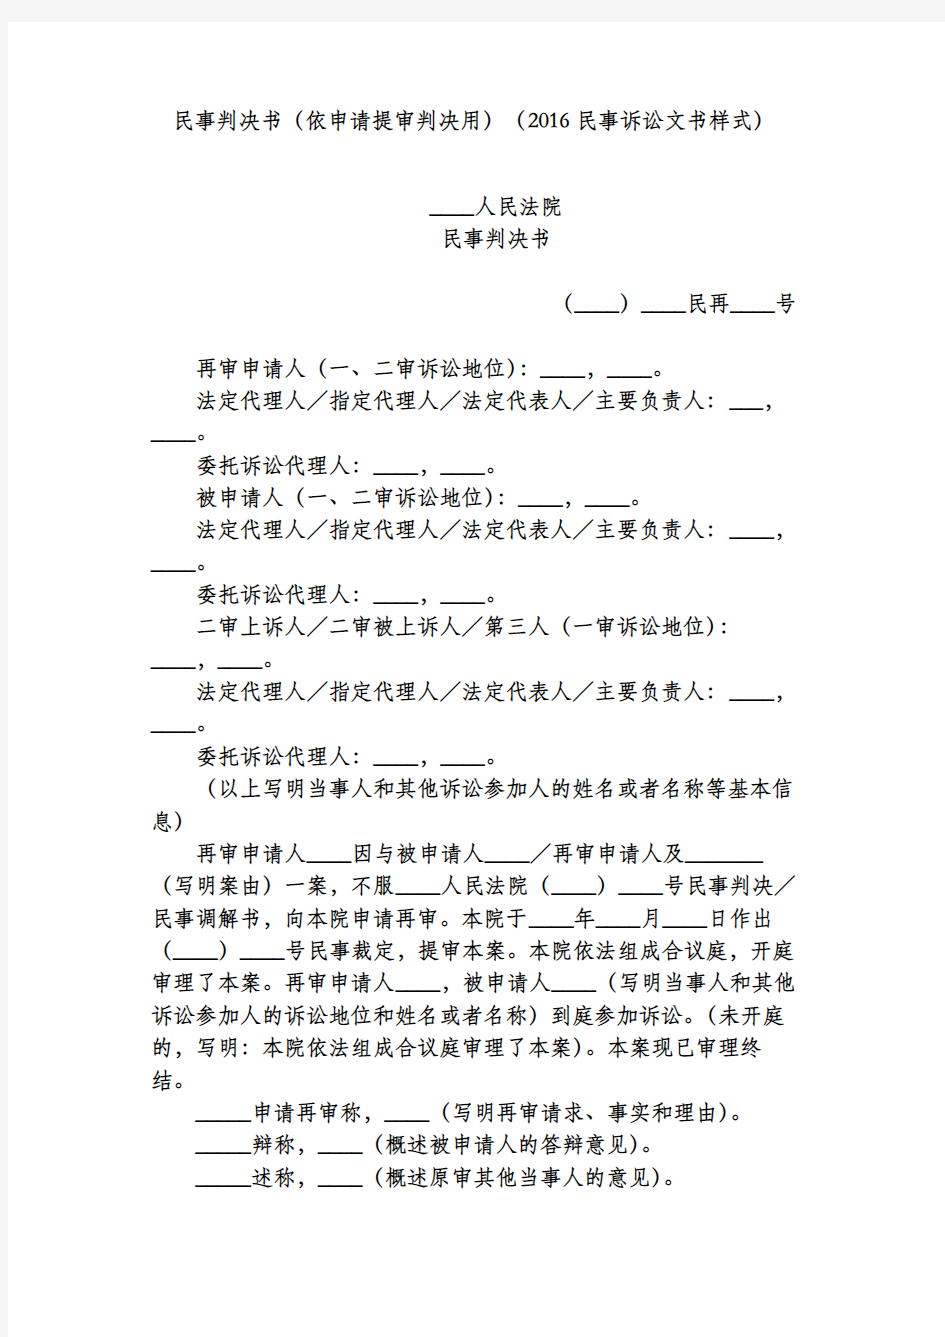 民事判决书(依申请提审判决用)(2016民事诉讼文书样式)